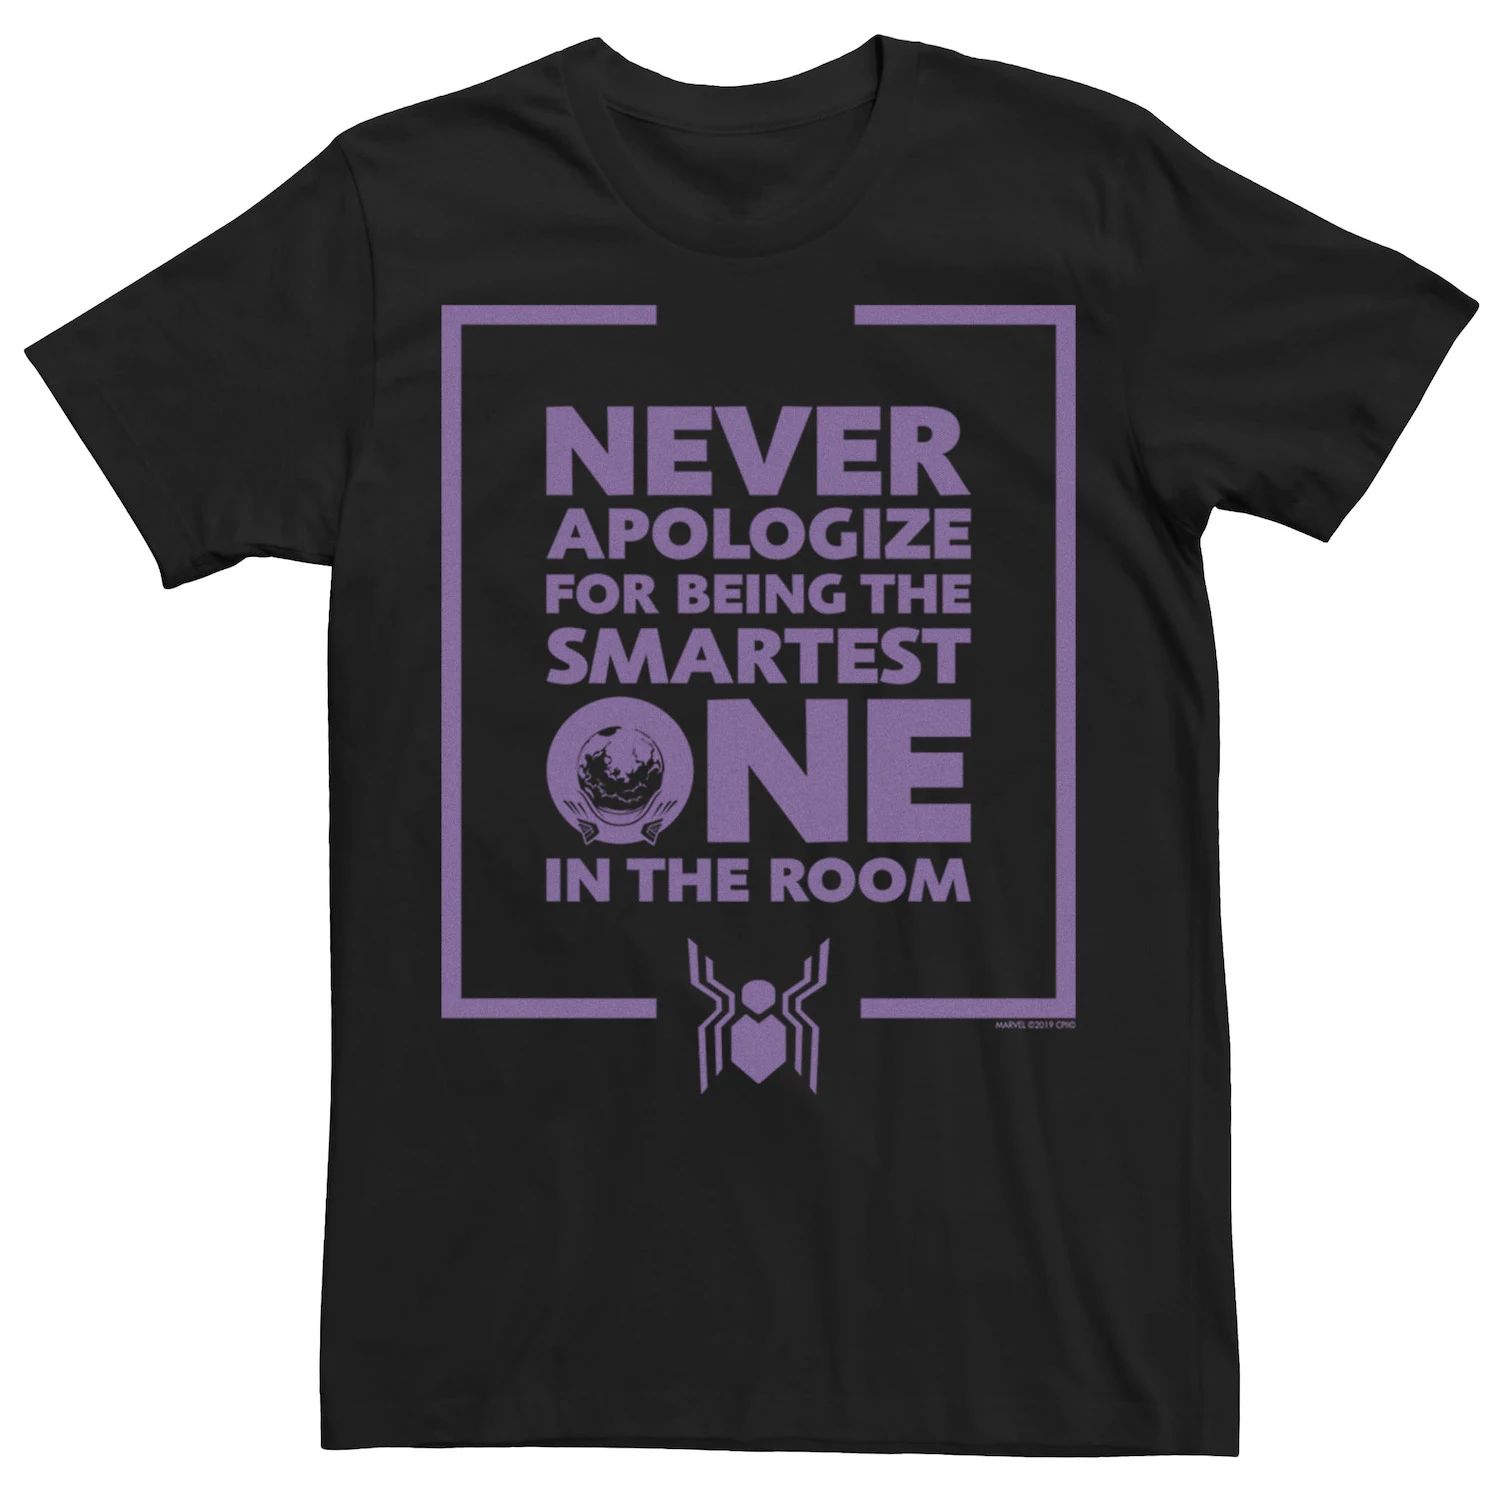 Мужская футболка с рисунком «Человек-паук Marvel вдали от дома» Mysterio «Никогда не извиняйся» никогда не извиняйся андерсон л